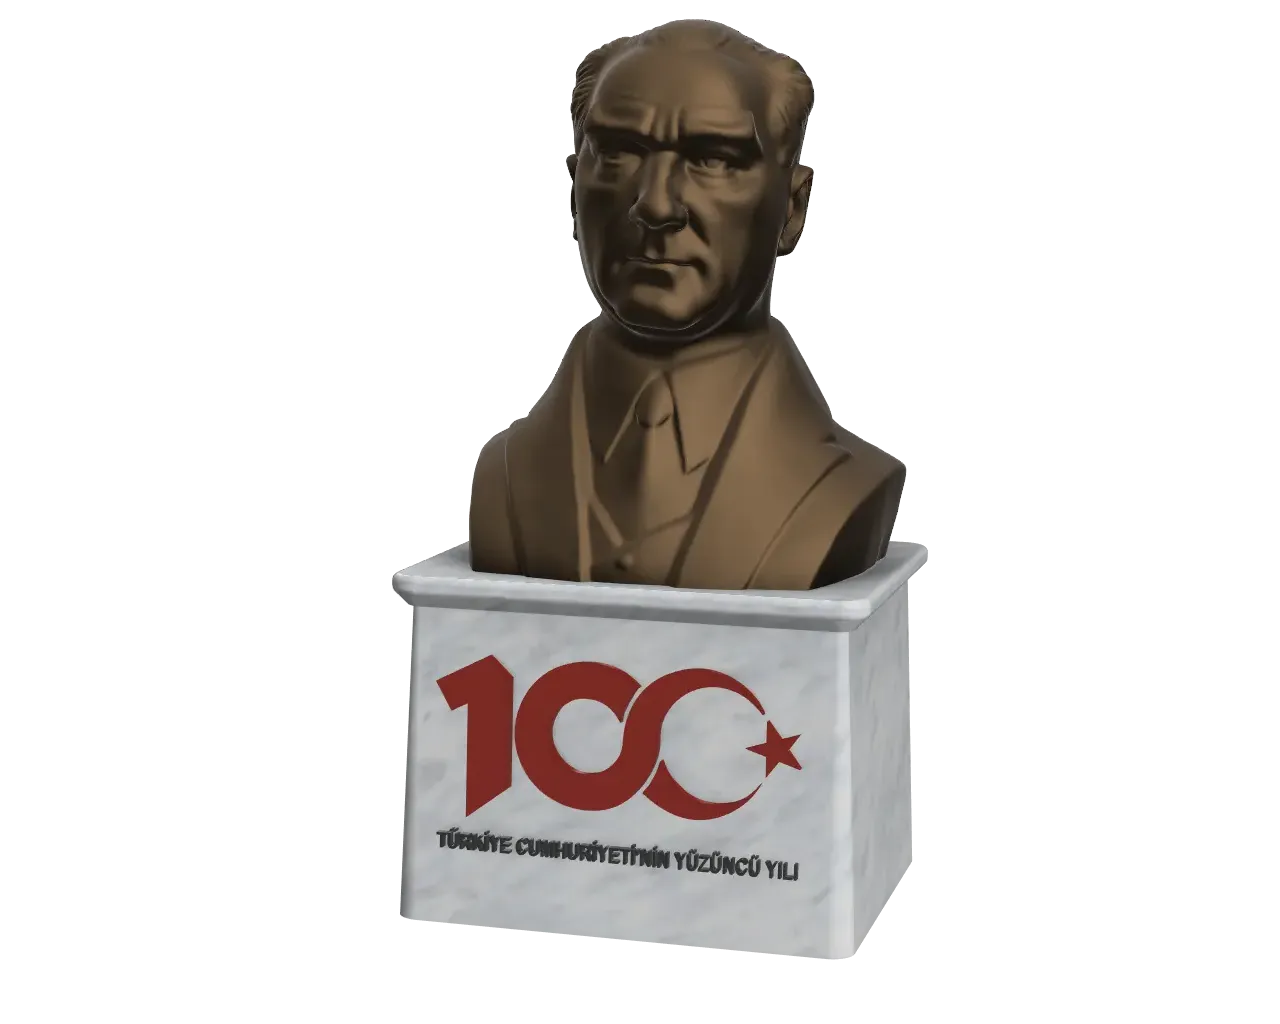 Mustafa Kemal Atatürk - Türkiye Cumhuriyeti'nin 100. Yılı